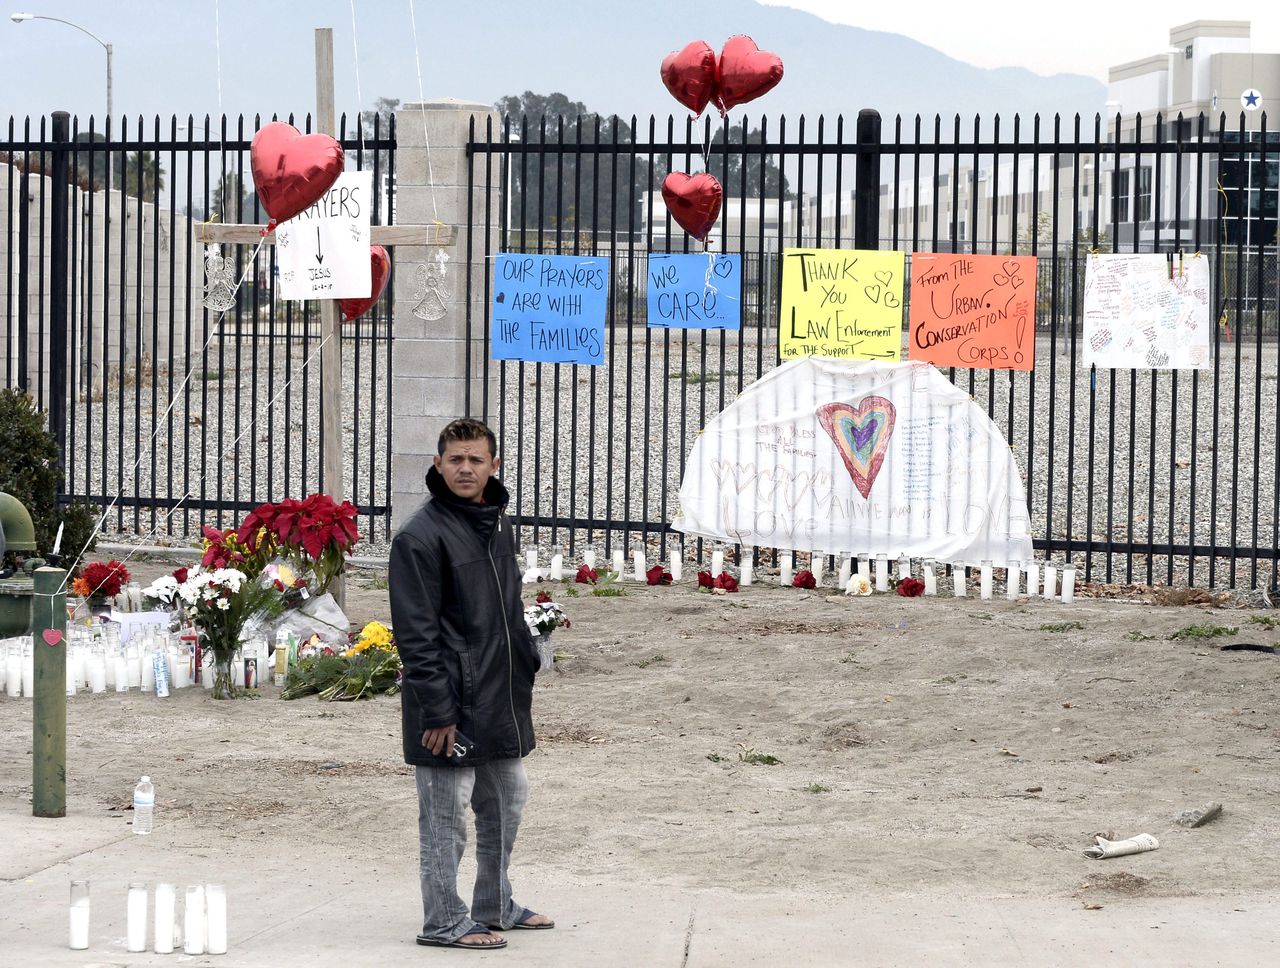 Bloemen en kaarsen voor de slachtoffers van de schietpartij in San Bernardino in Californië.